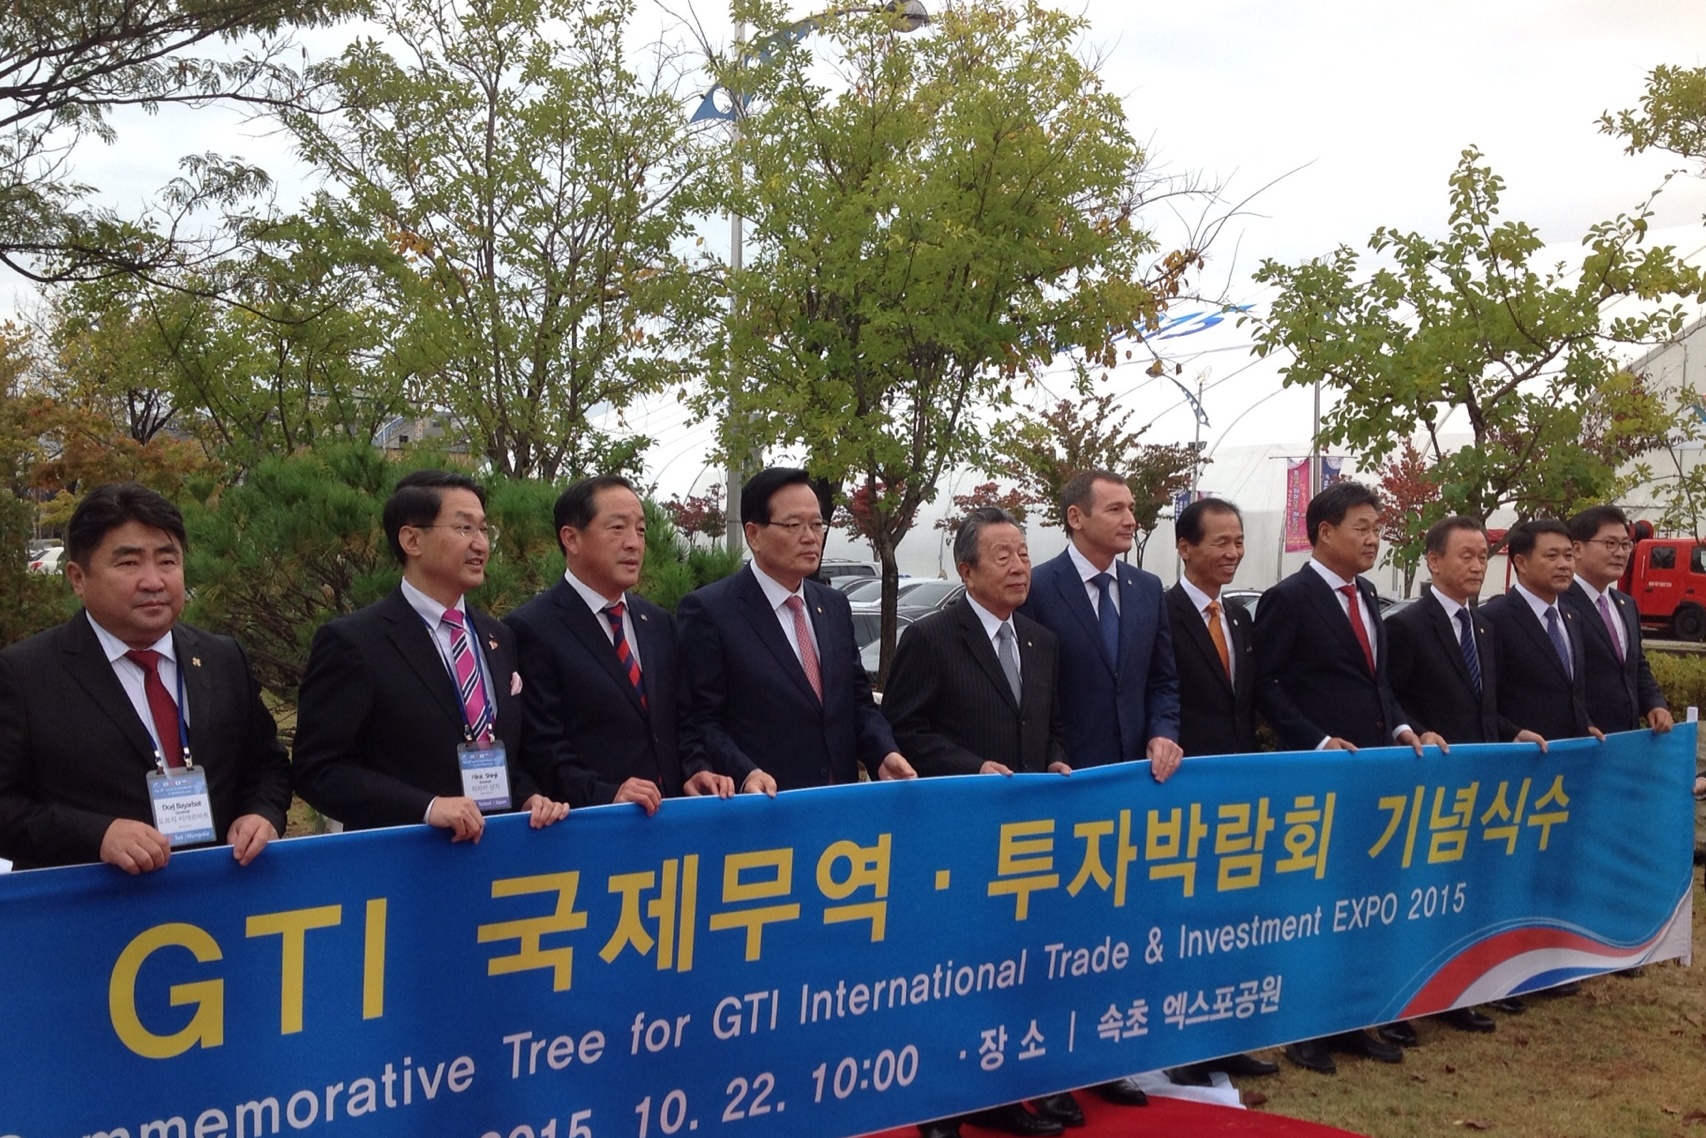 Делегация Приморья участвует в торгово-инвестиционной выставке GTI EXPO 2015 в Корее